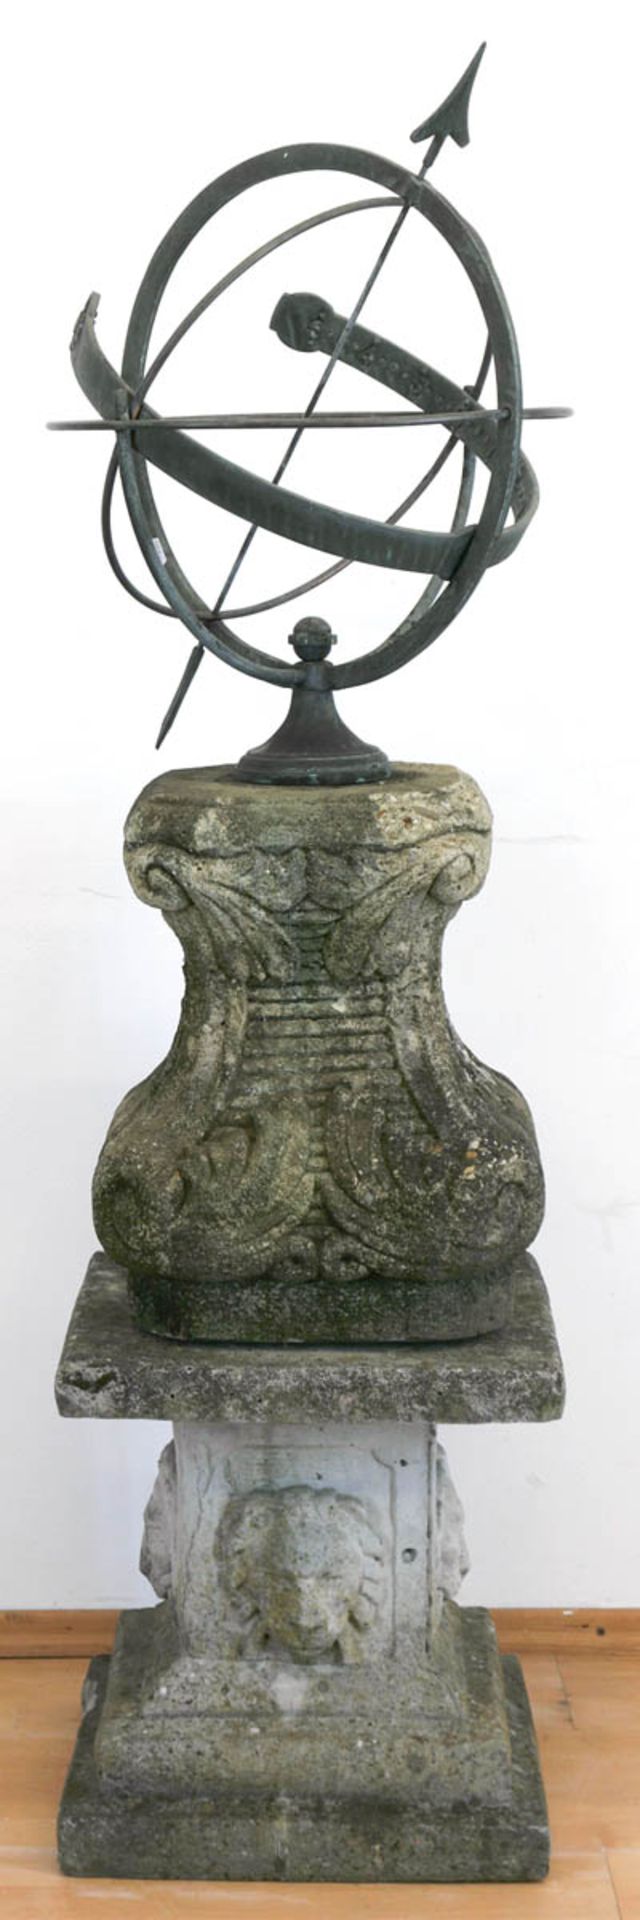 Sonnenuhr auf Postament, Steingußsockel mit Figuren u. Ornamenten, Uhr aus Gußeisen mitarabischen